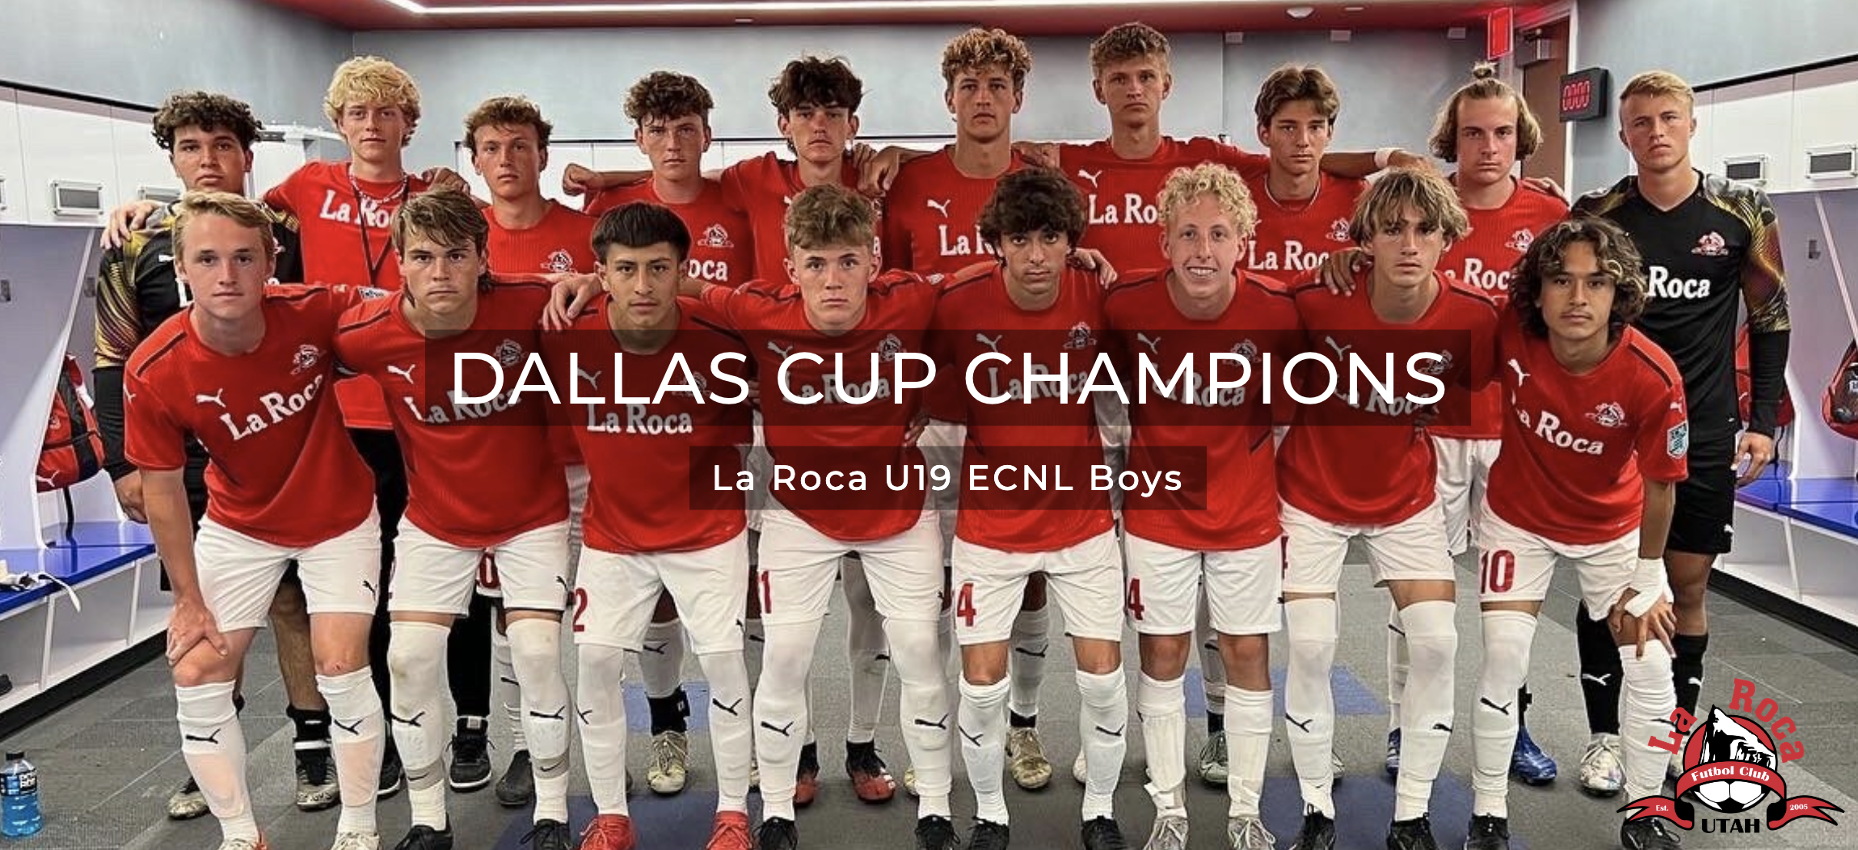 History Making Win at Dallas Cup for La Roca FC U19 Boys